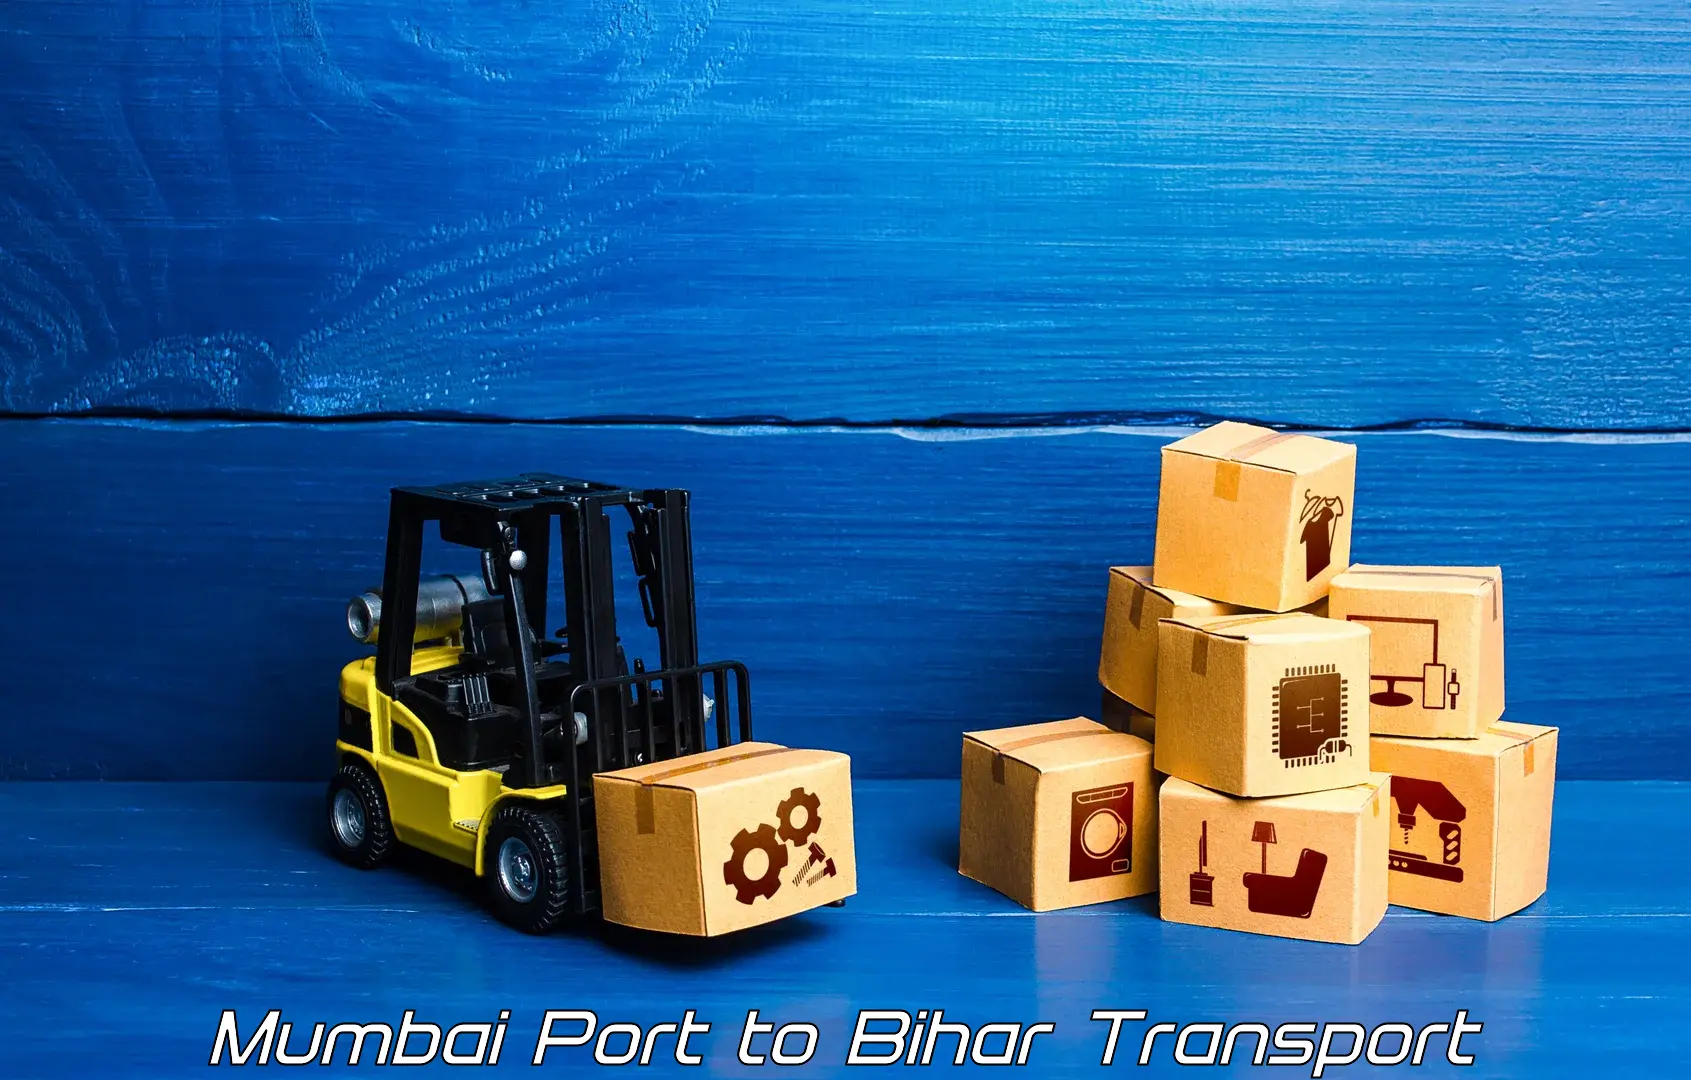 Furniture transport service Mumbai Port to Daudnagar